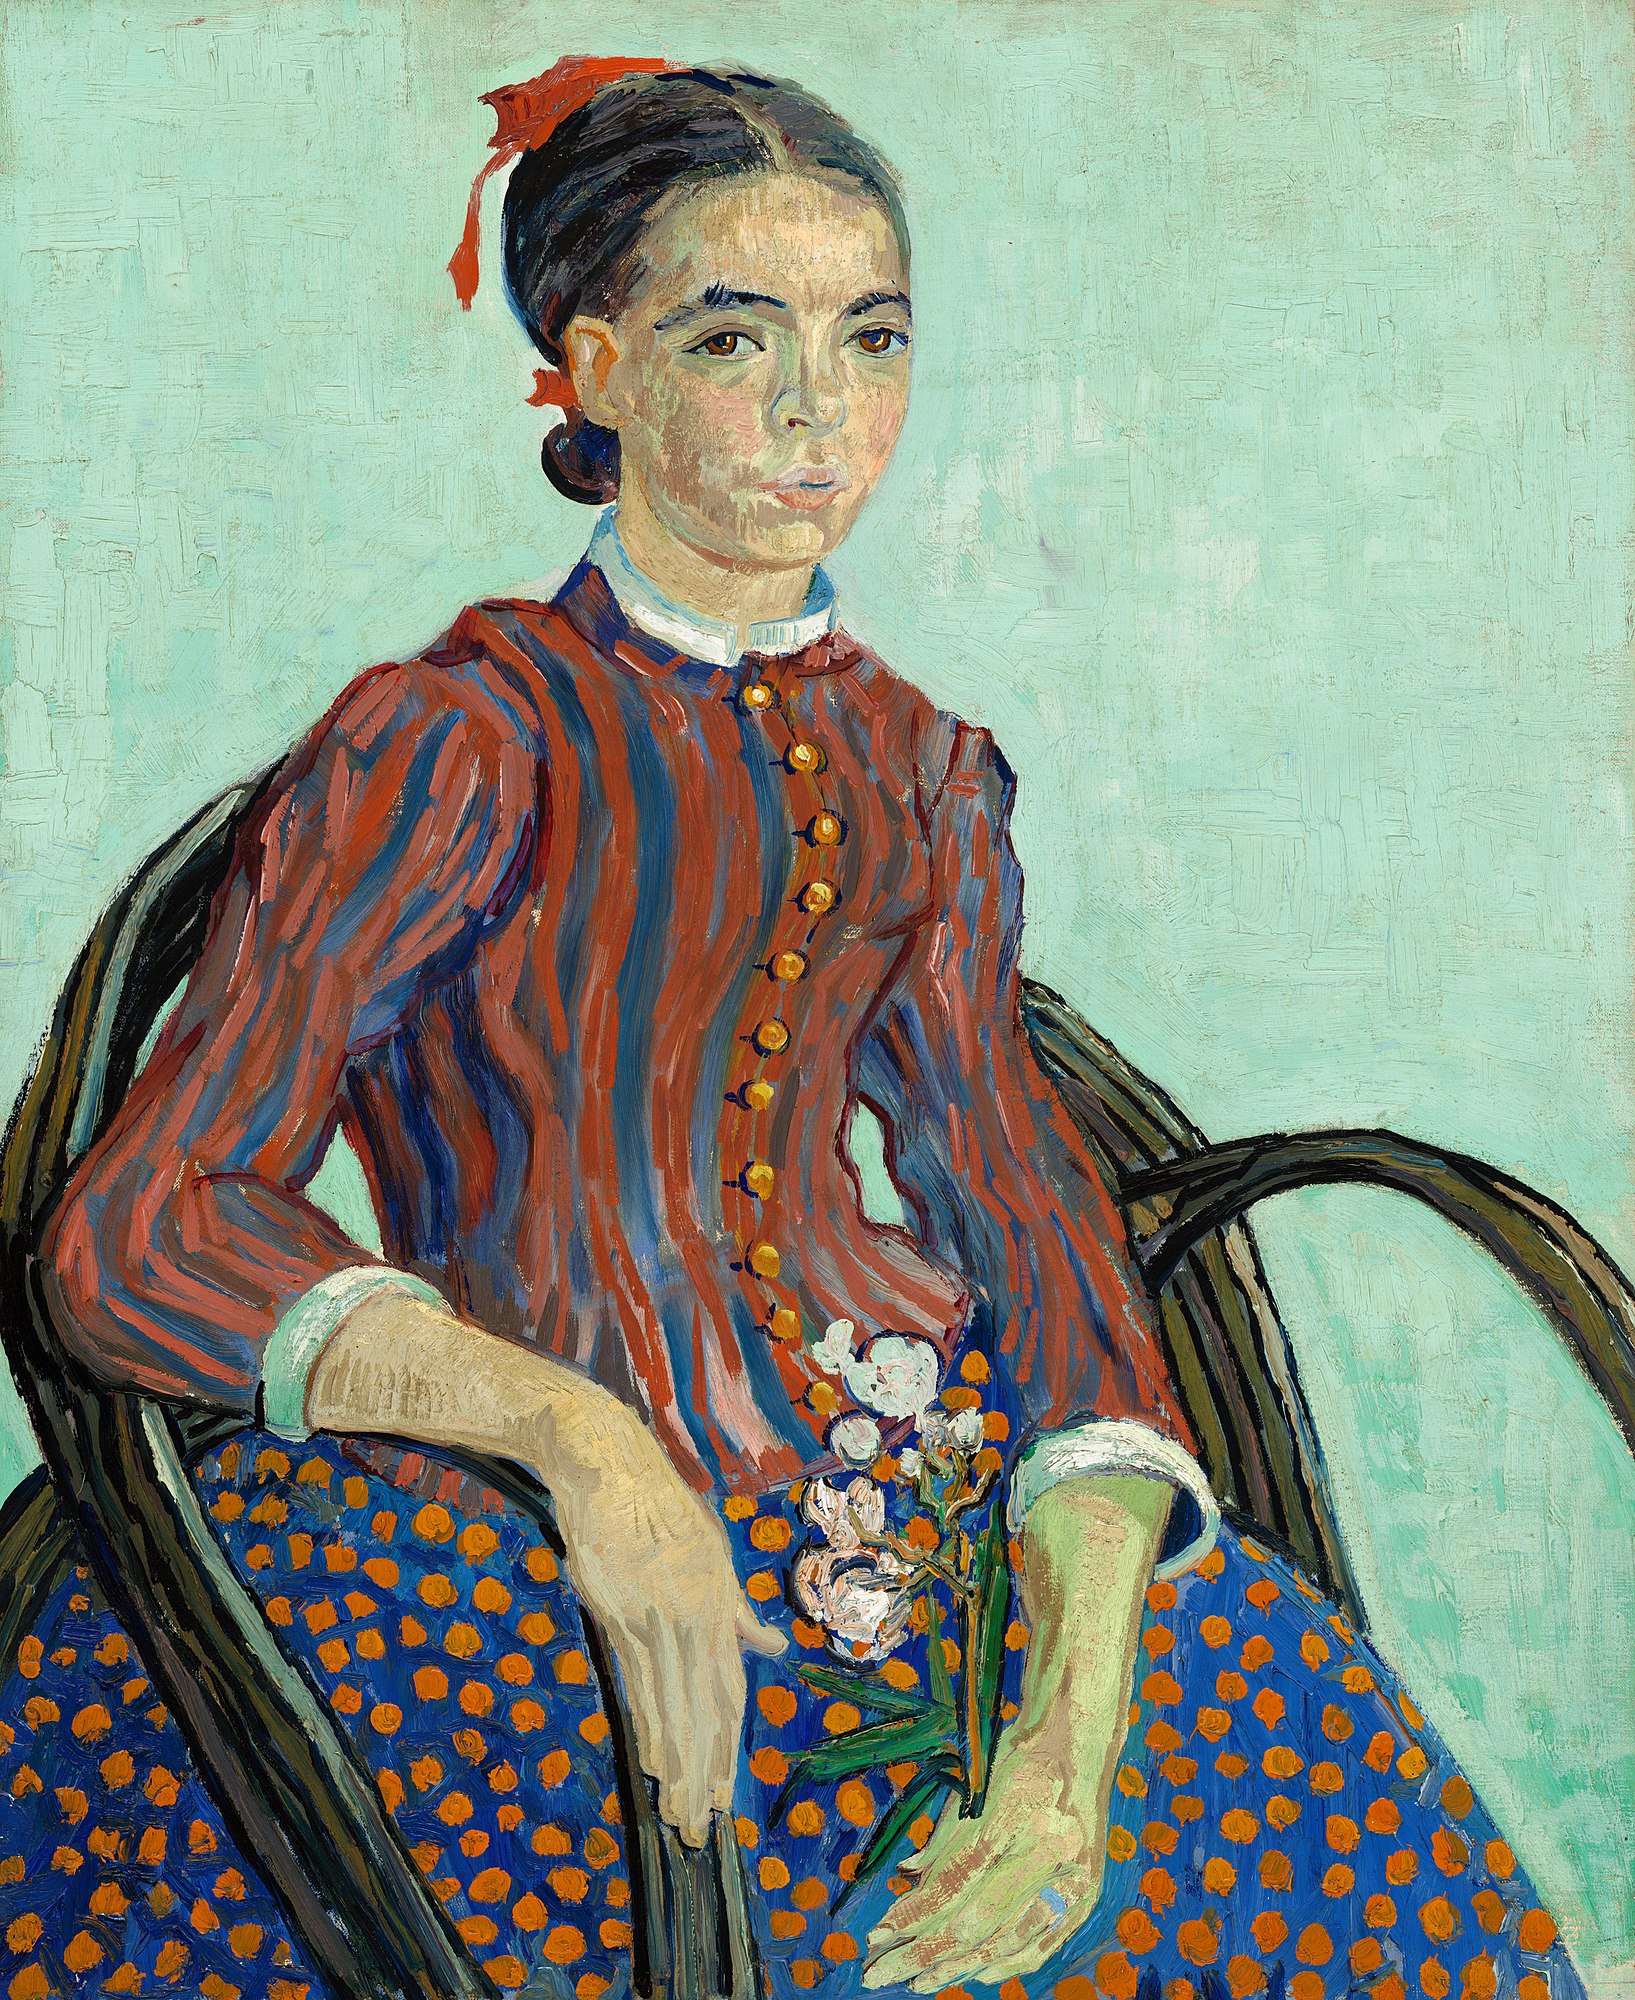 La Mousmé by Vincent van Gogh - 1888 - 73.3 x 60.3 cm 